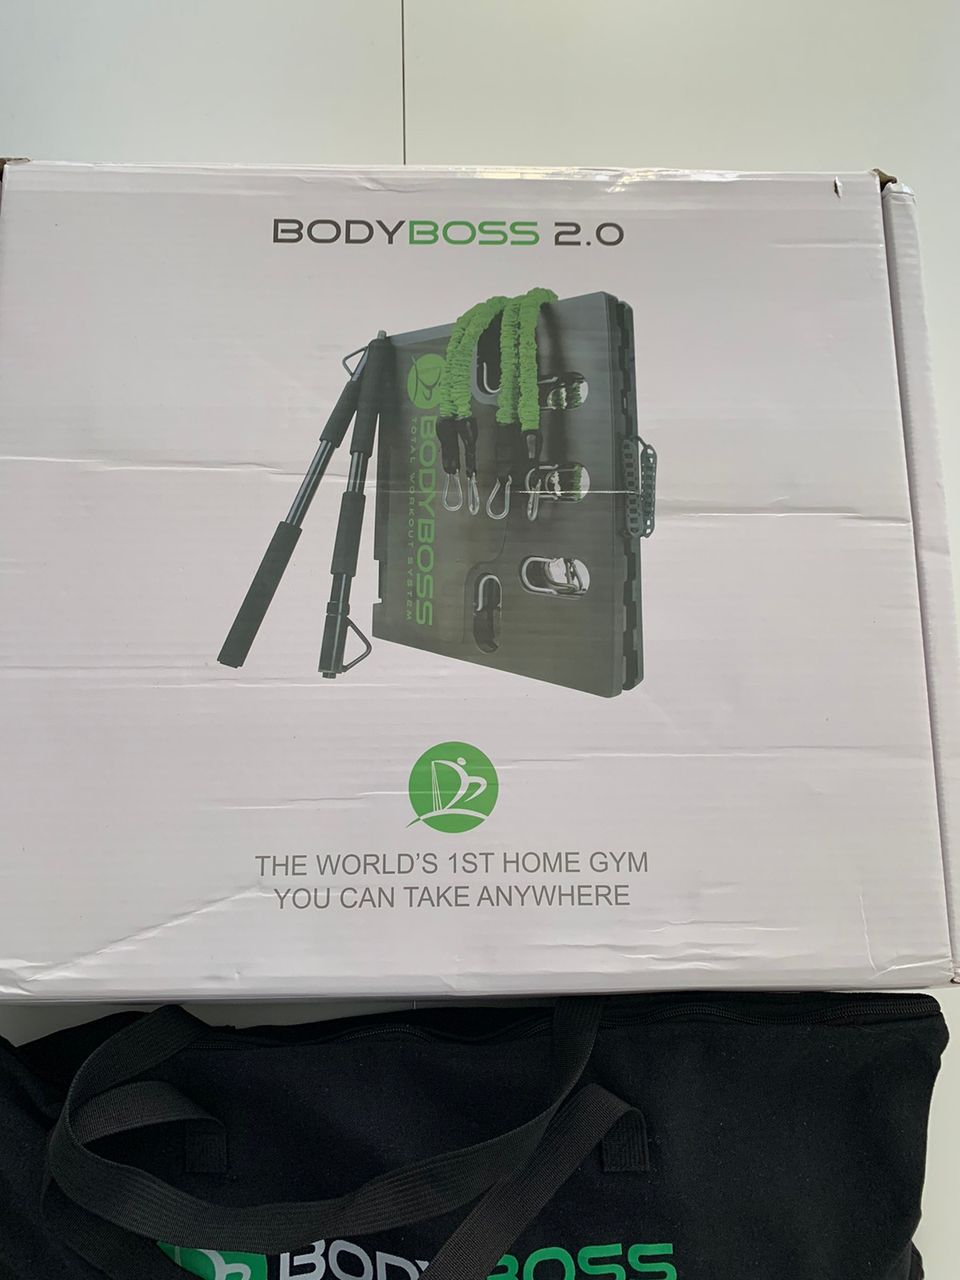 Bodyboss 2.0